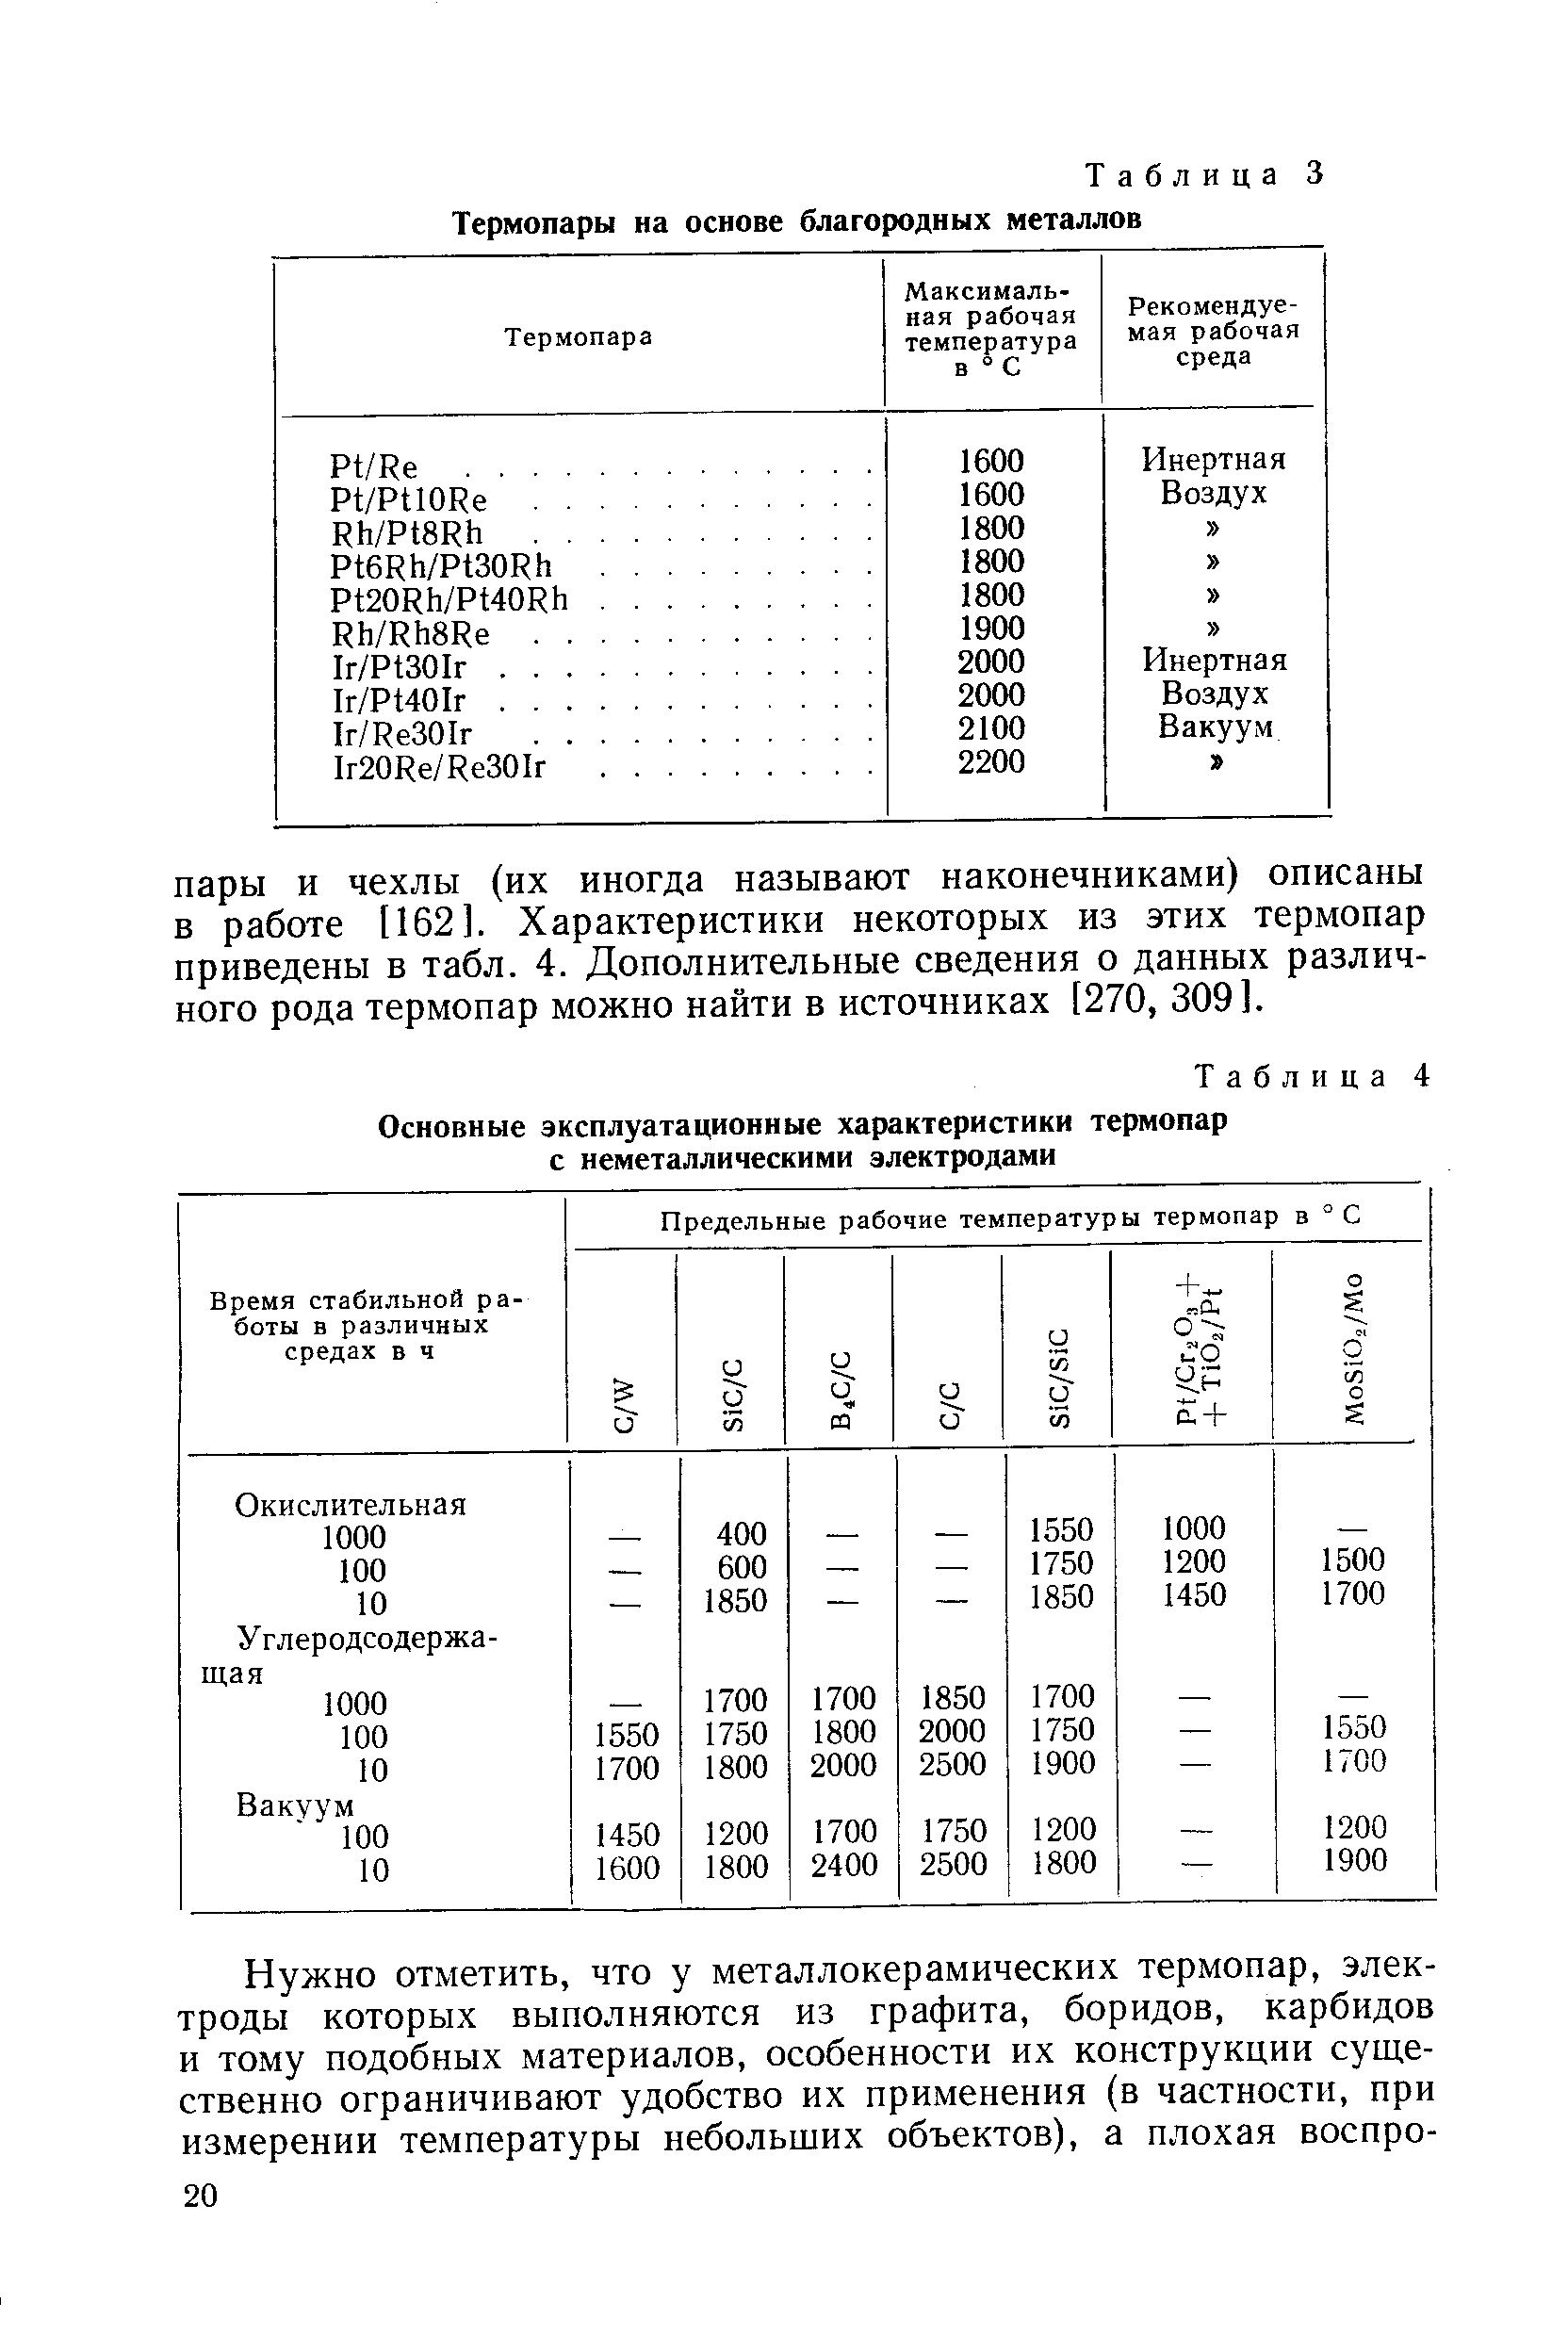 Таблица 4 Основные <a href="/info/108977">эксплуатационные характеристики</a> термопар с неметаллическими электродами
